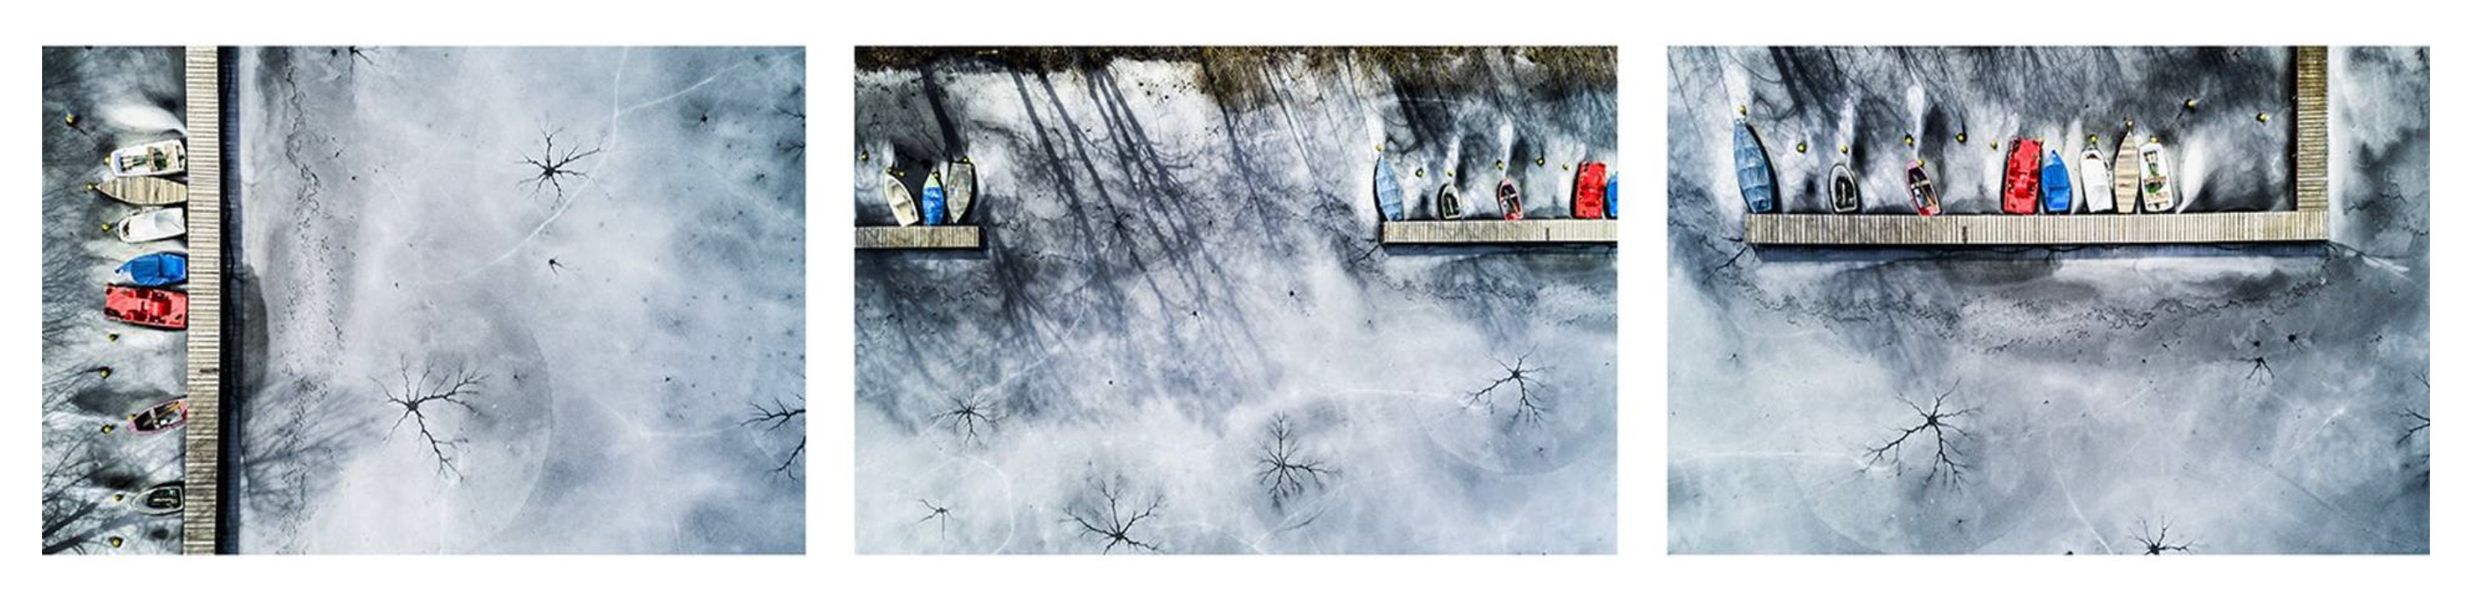 Stefan Kuhn's "Lakeshore Operations / Winter Serie #7" Drohnen Fotografie zeigt ein Seeufer mit 3 Motiven in einem Bild.